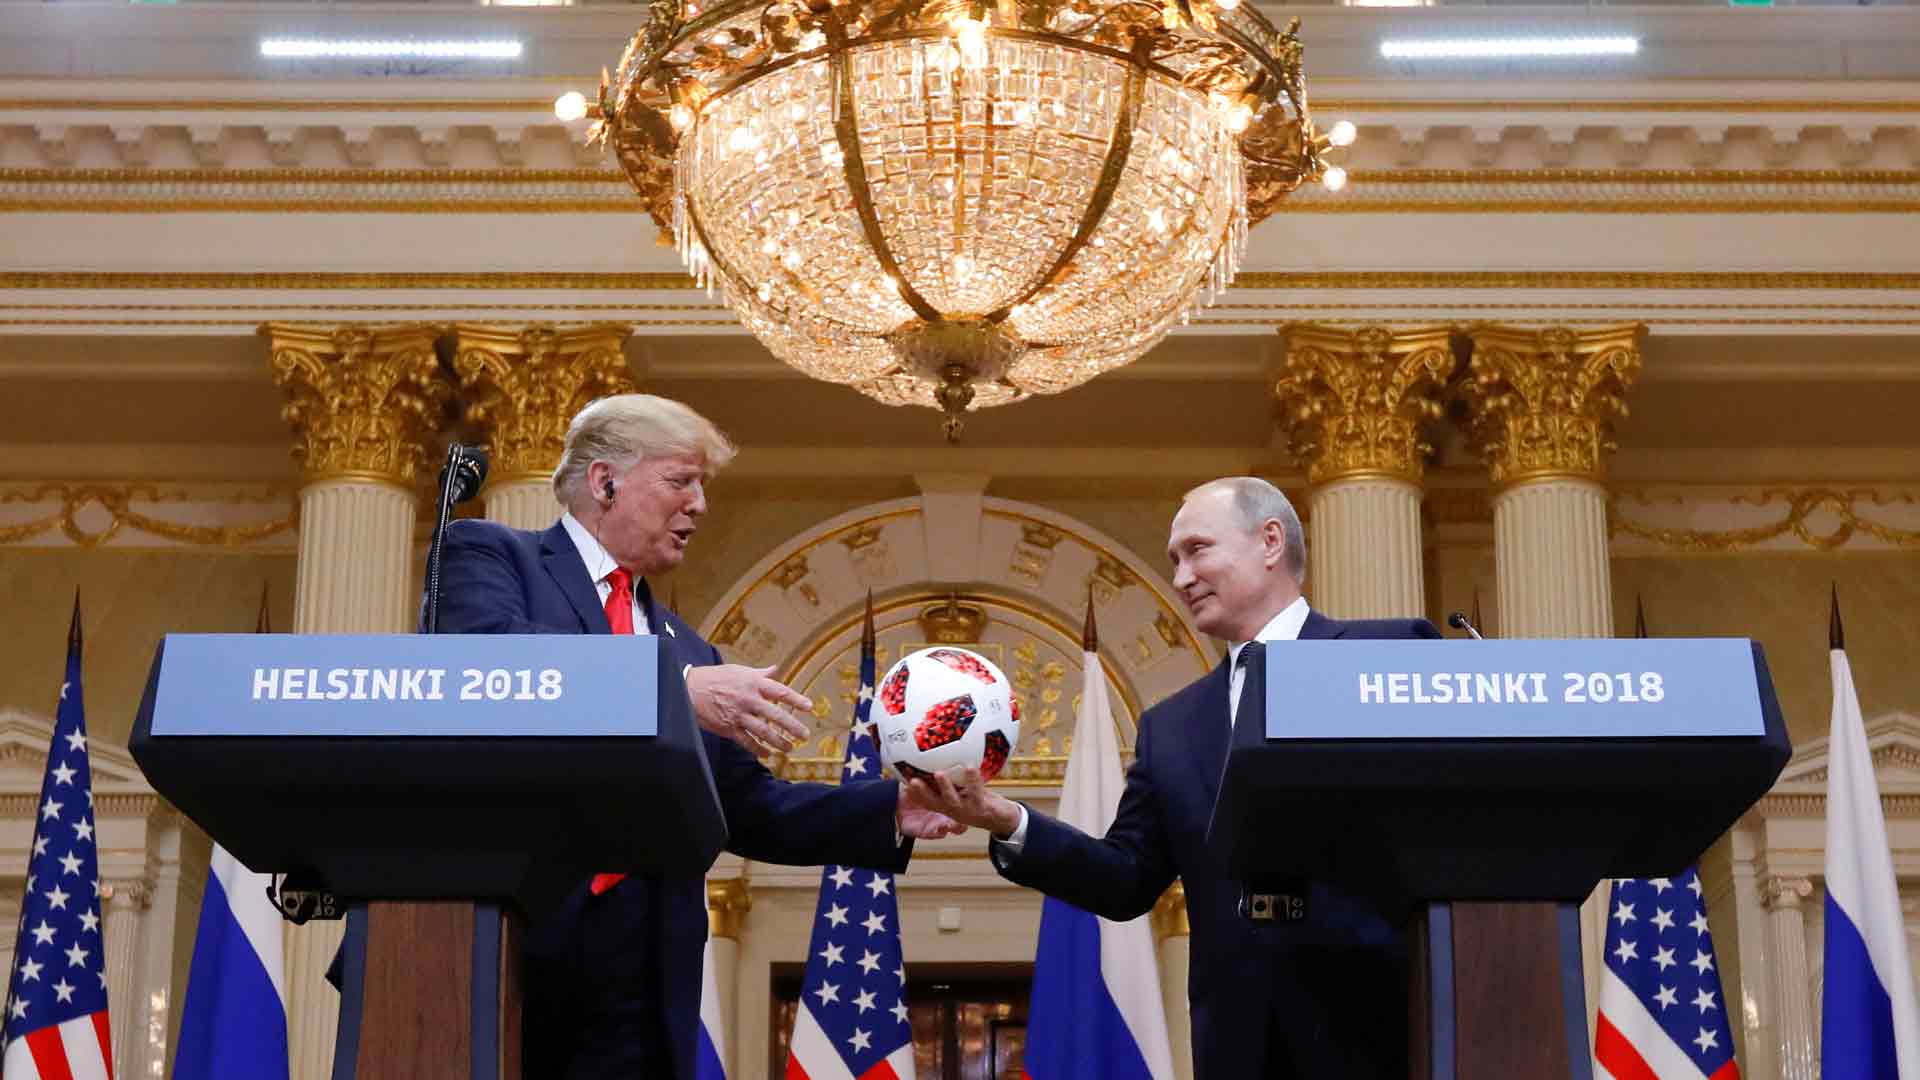 El mundo reacciona a la rueda de prensa de Trump y Putin en Helsinki